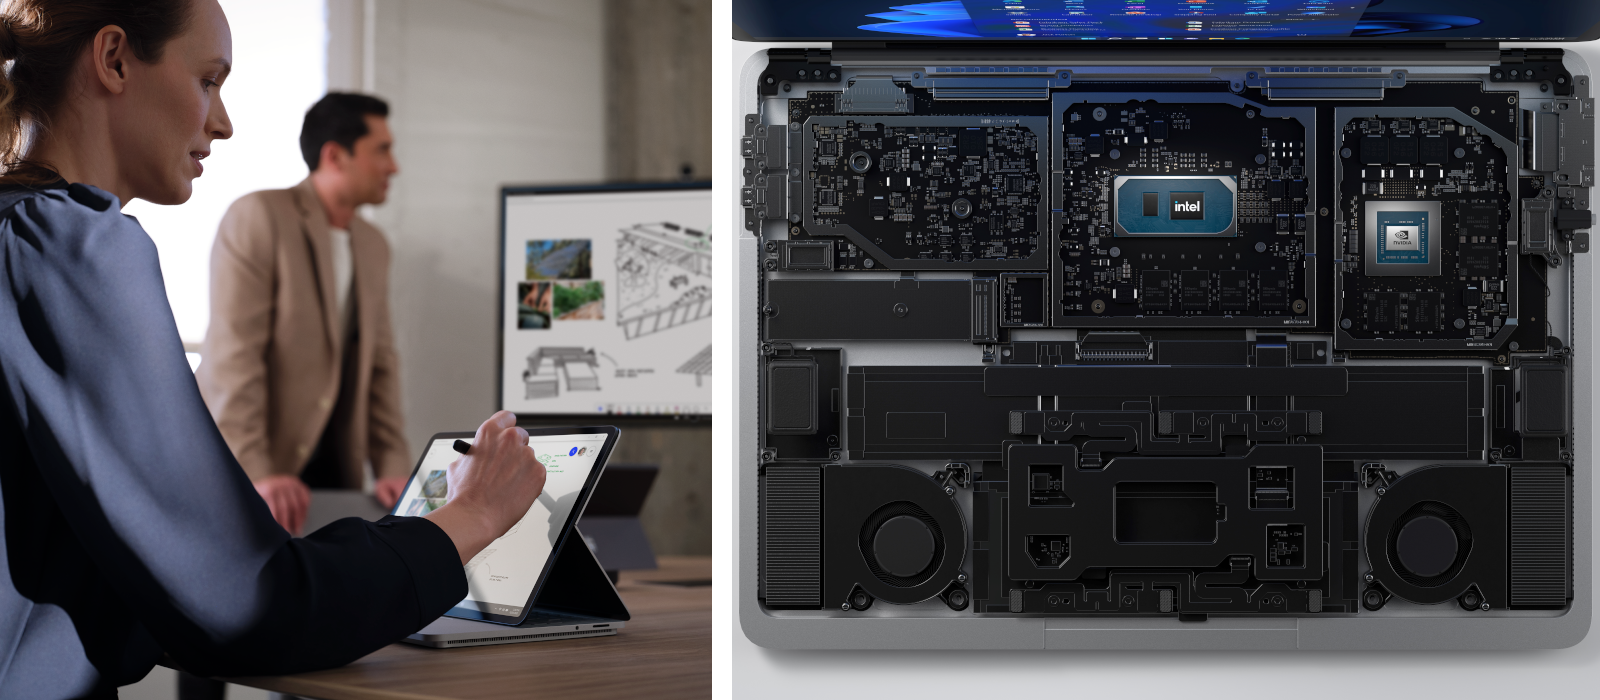 Das linke Bild zeigt eine Person, die in einem Meetingraum am Surface Laptop Studio arbeitet, das rechte Bild zeigt eine detaillierte Ansicht der verbauten Technik im Surface Laptop Studio